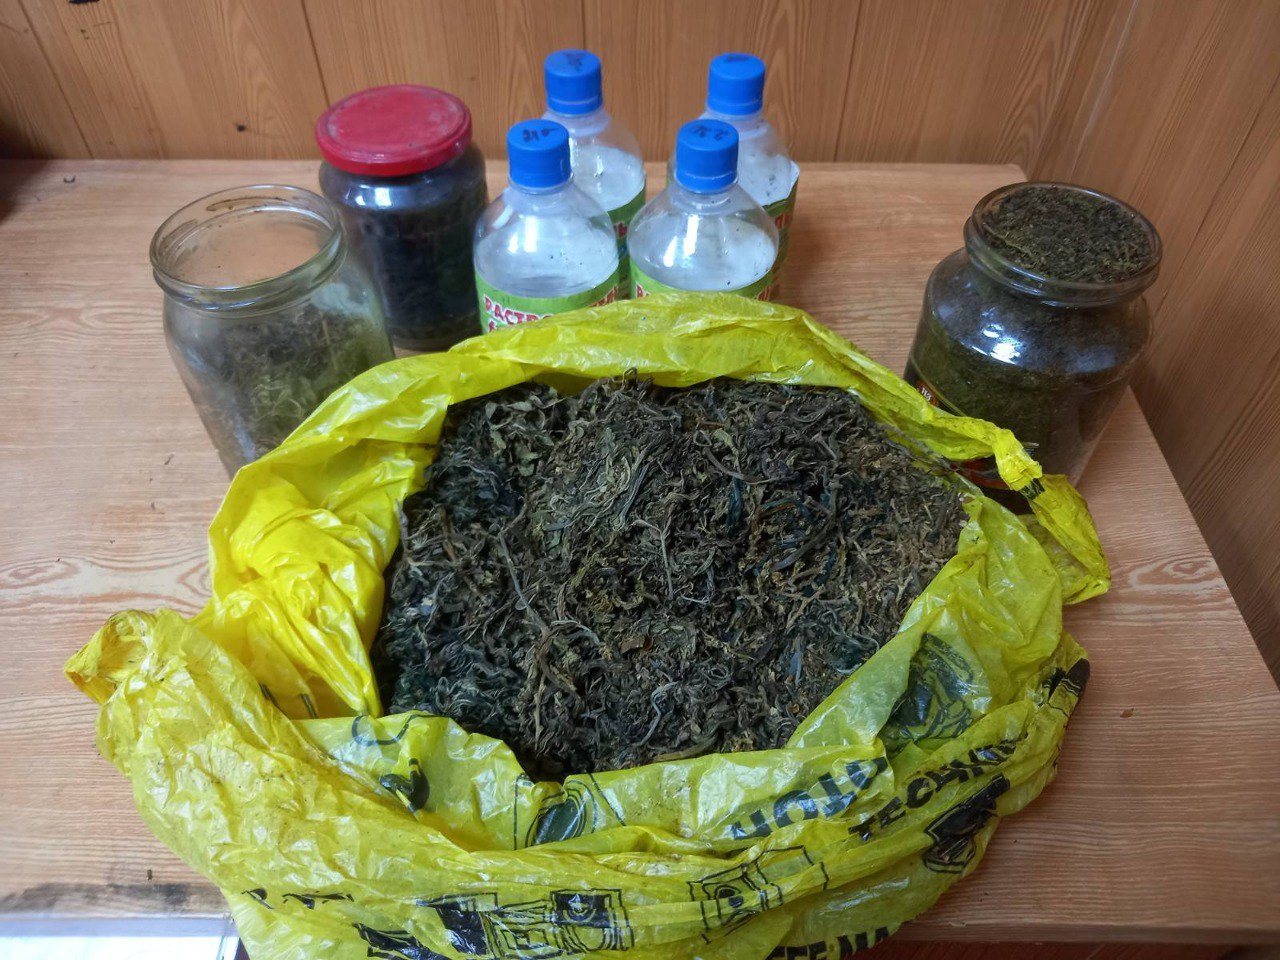 Фото У молодого парня в селе Бурятии нашли 2 кг марихуаны